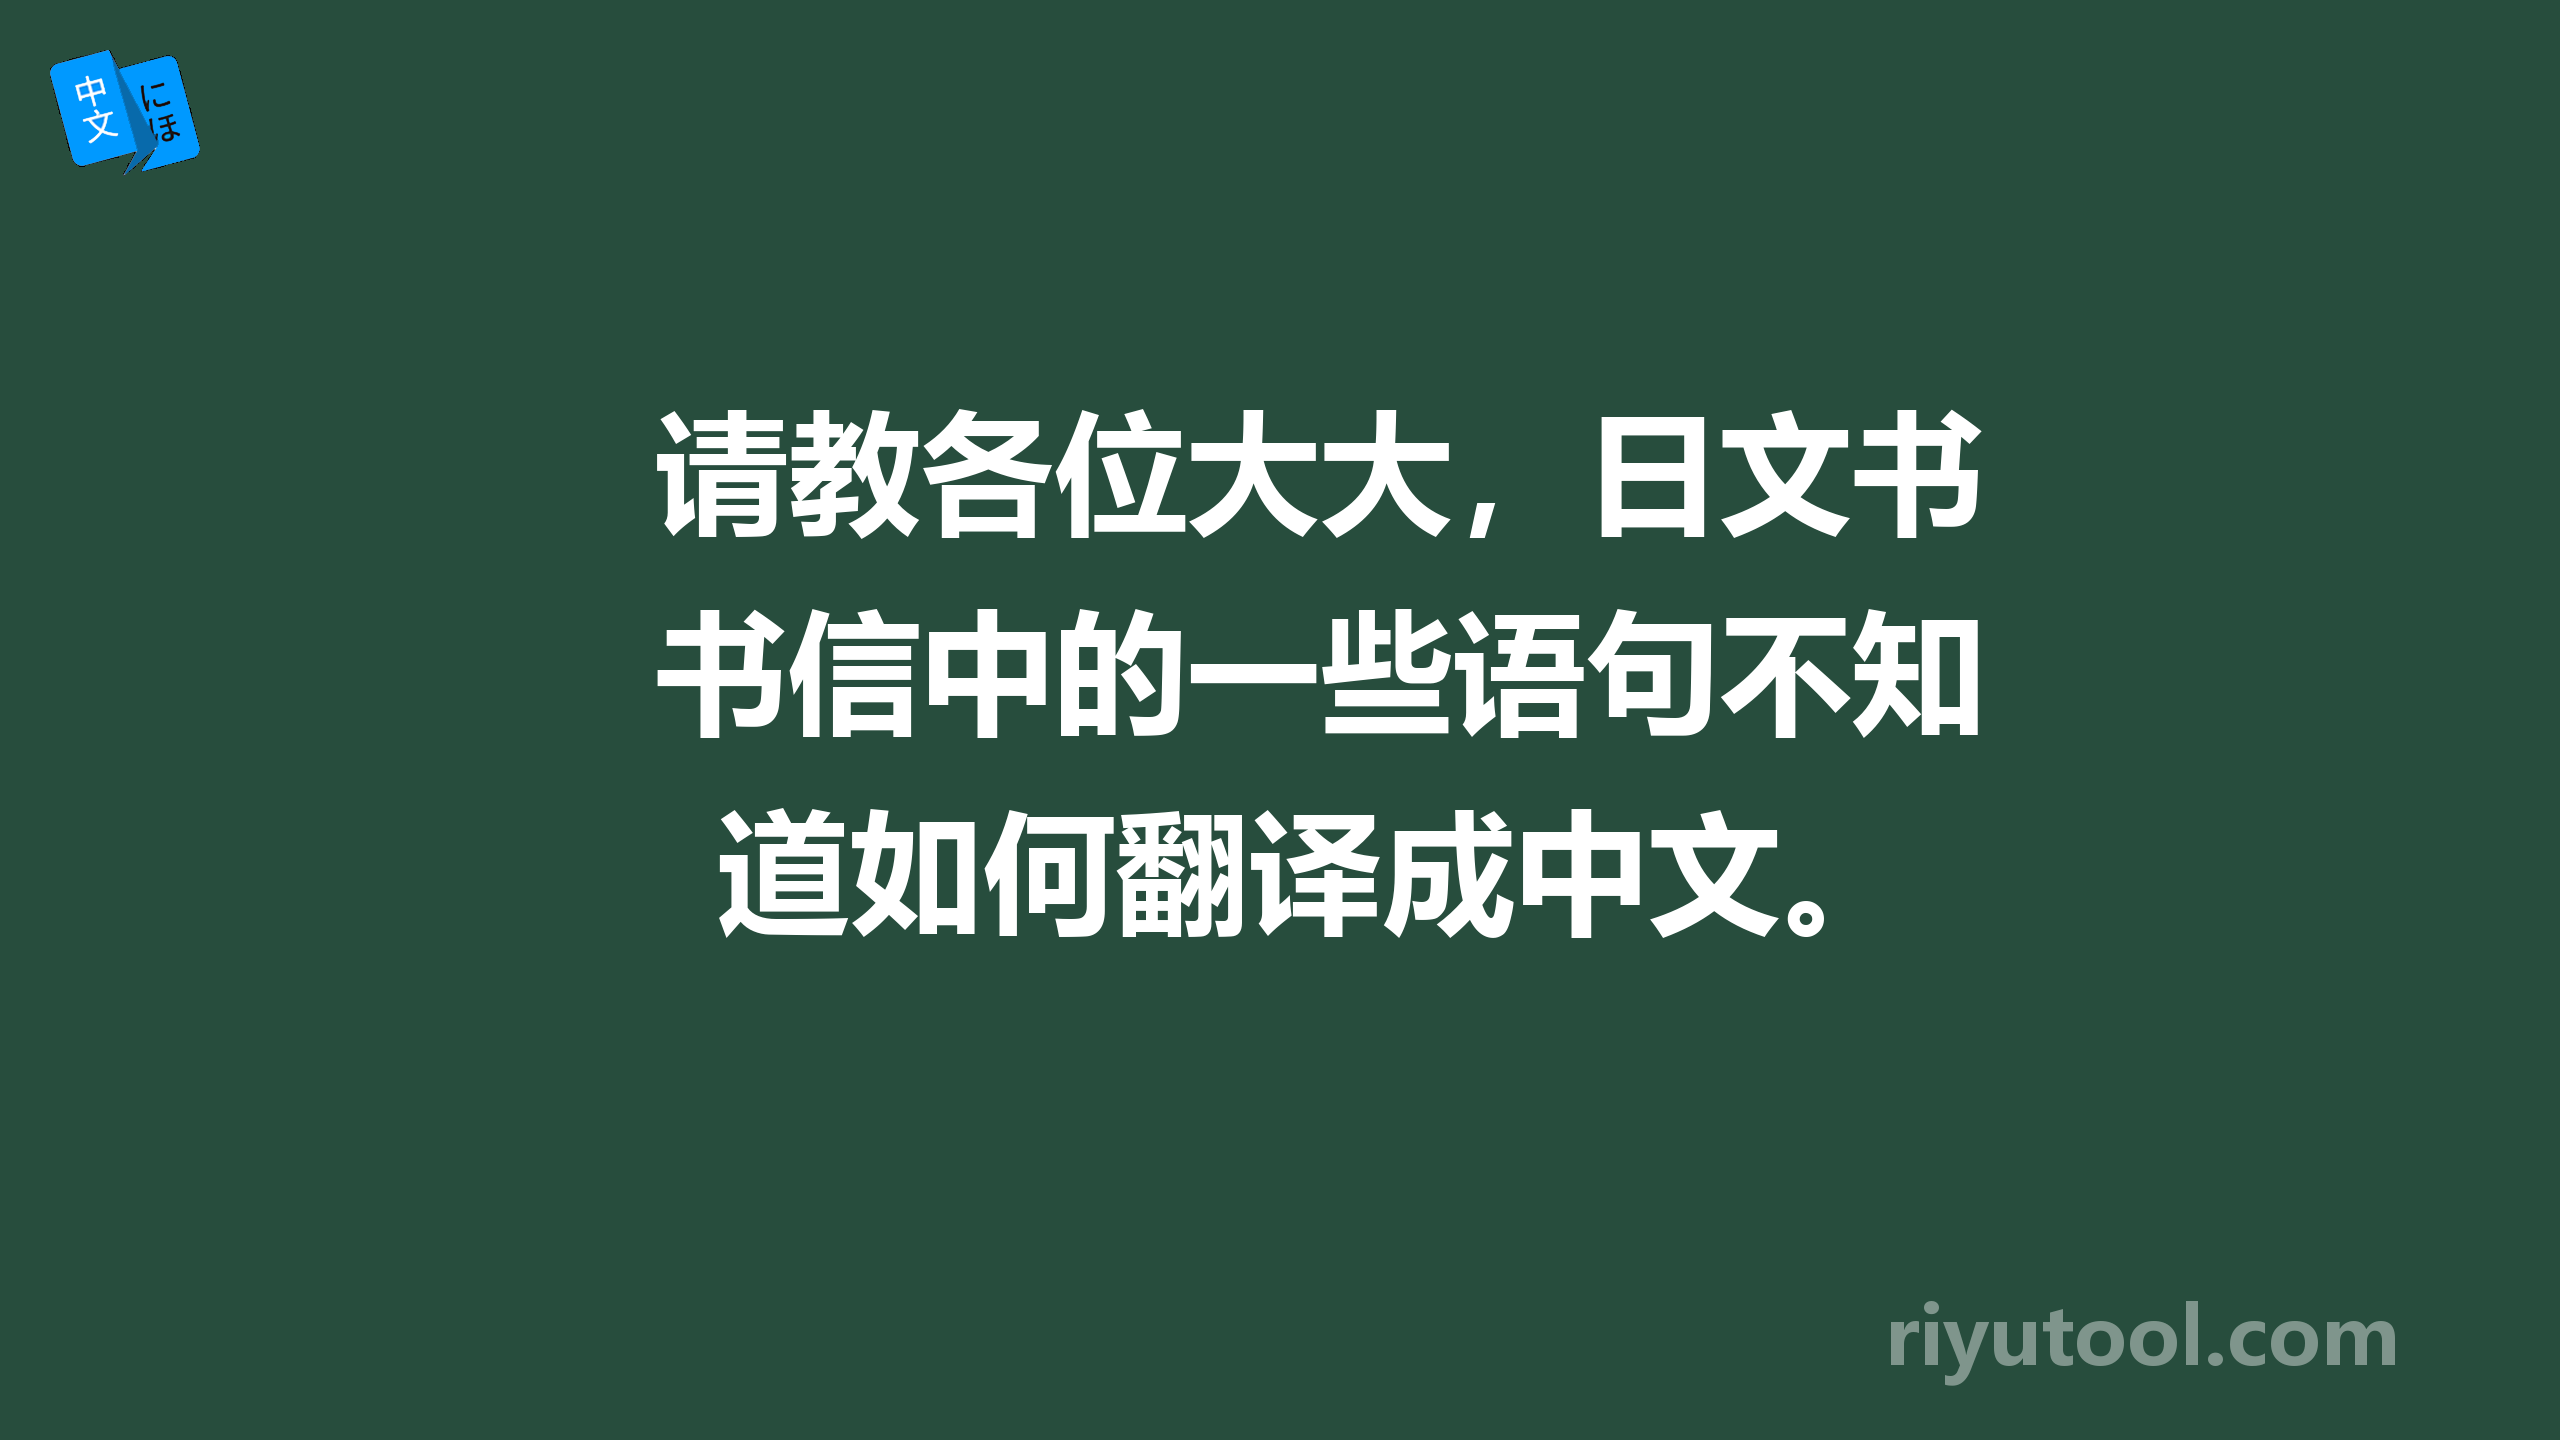 请教各位大大，日文书信中的一些语句不知道如何翻译成中文。